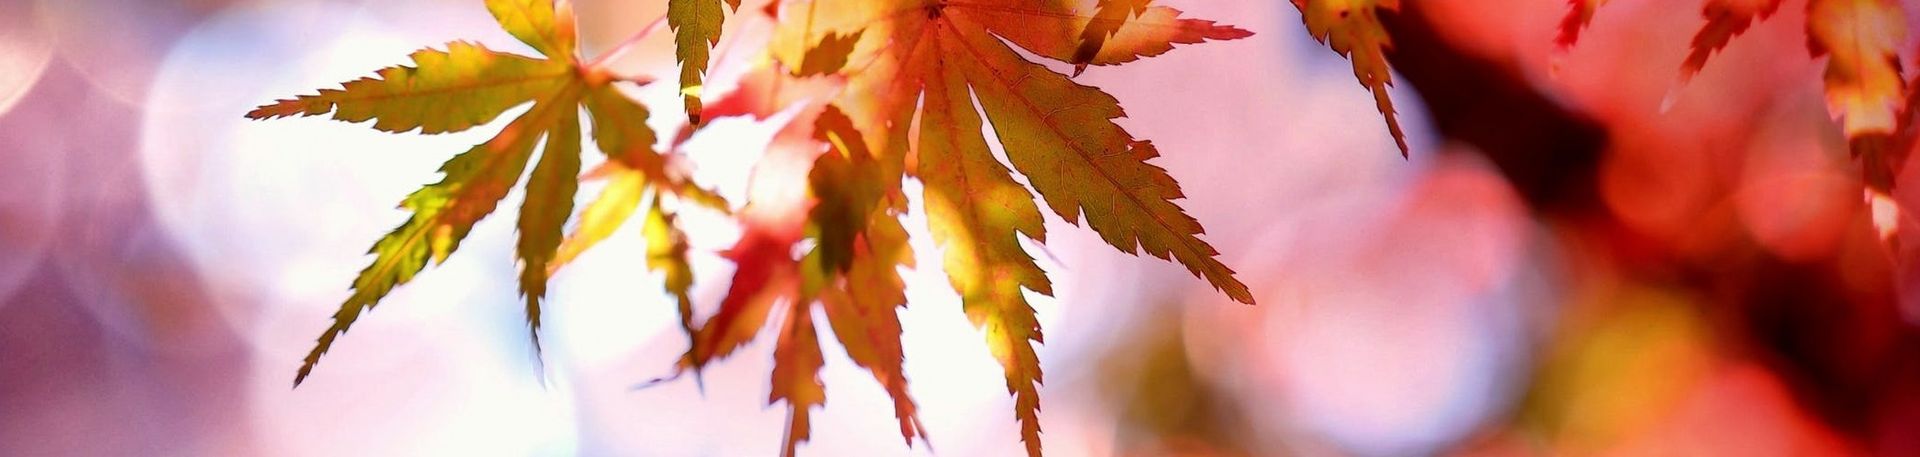 Rotgefärbte Ahornblätter im Herbstlicht